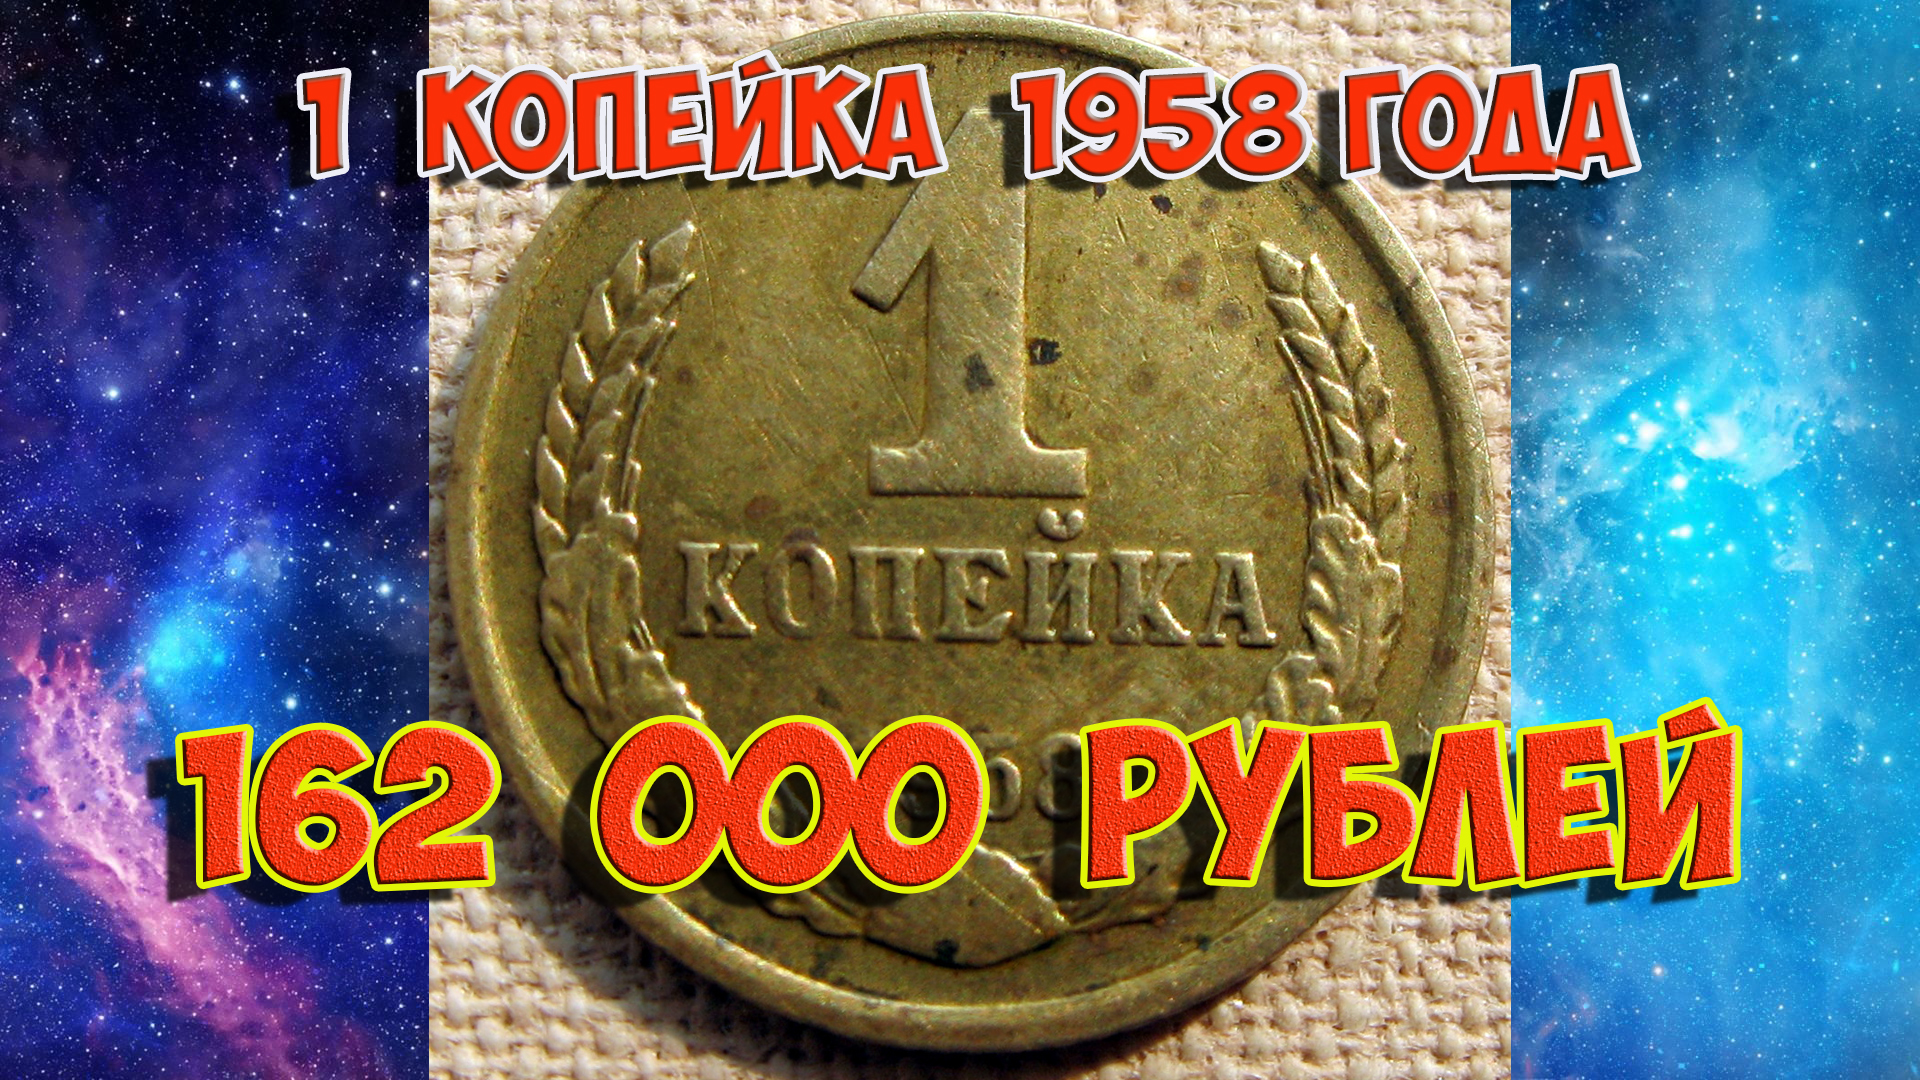 Стоимость редких монет. Как распознать дорогие монеты России достоинством 1 копейка 1958 года.